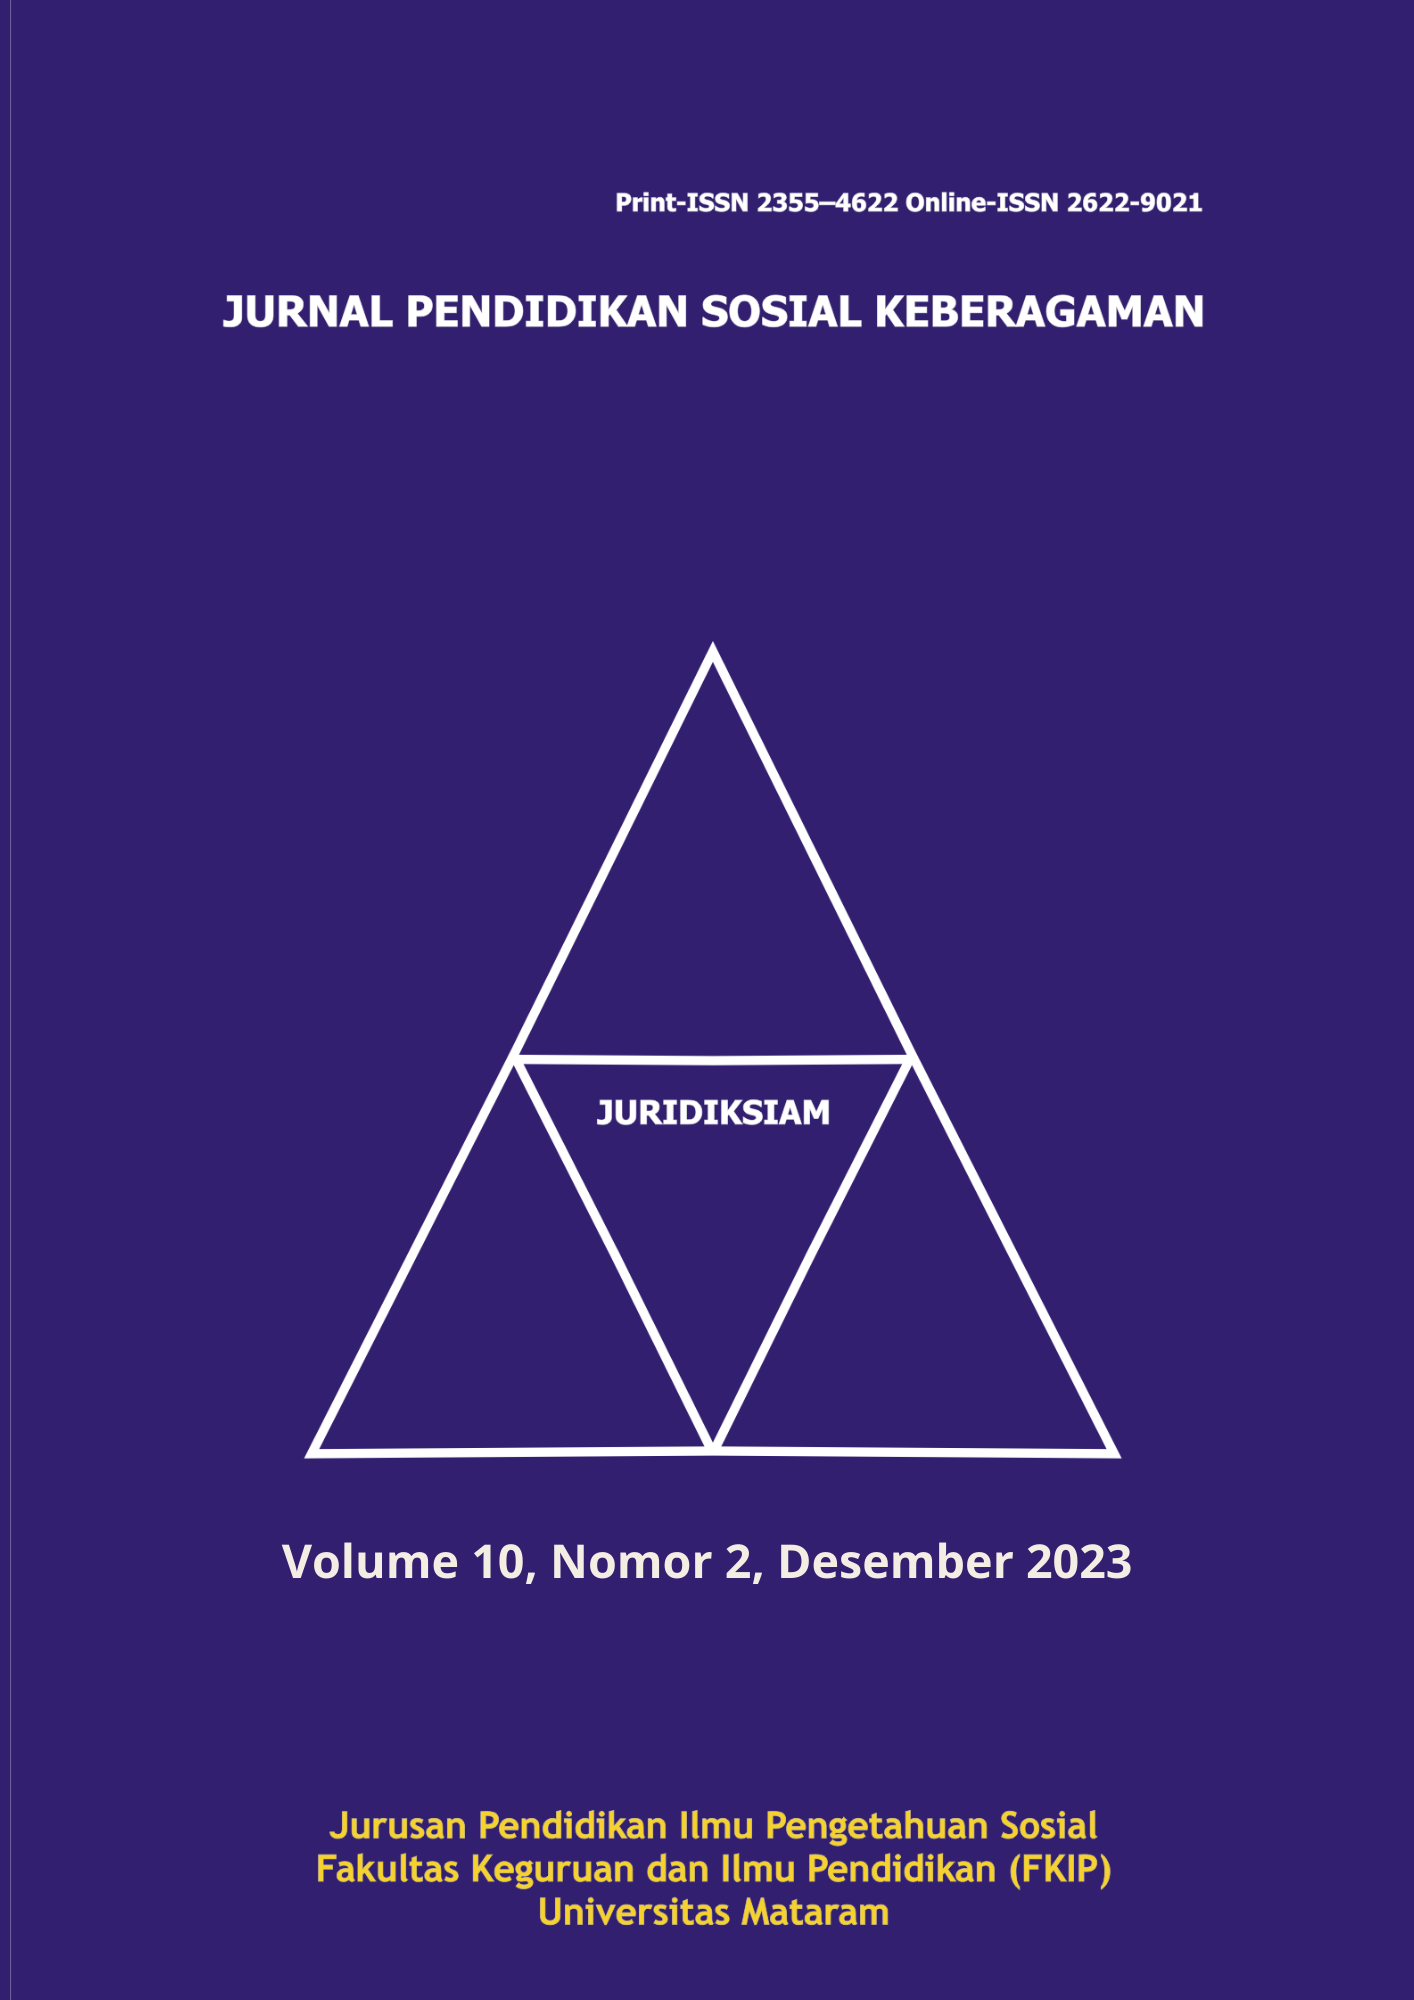 					View Vol. 10 No. 2 (2023): Juridiksiam: Jurnal Pendidikan Sosial Keberagaman
				